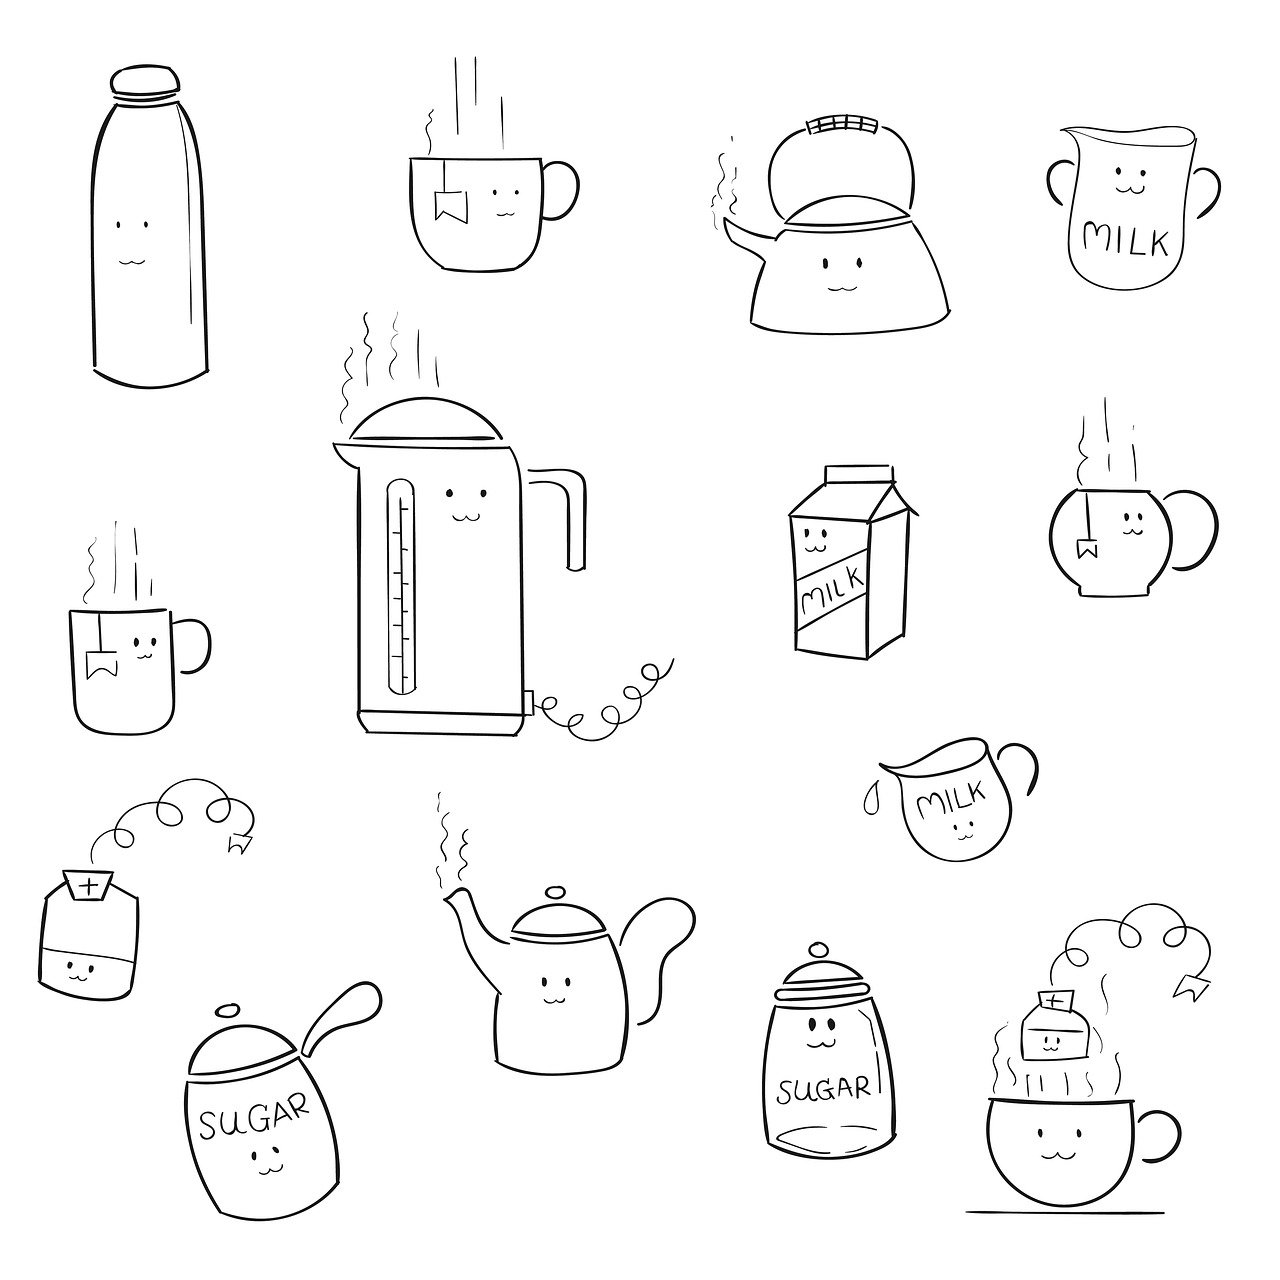 drinks, appliance, doodle-6093226.jpg